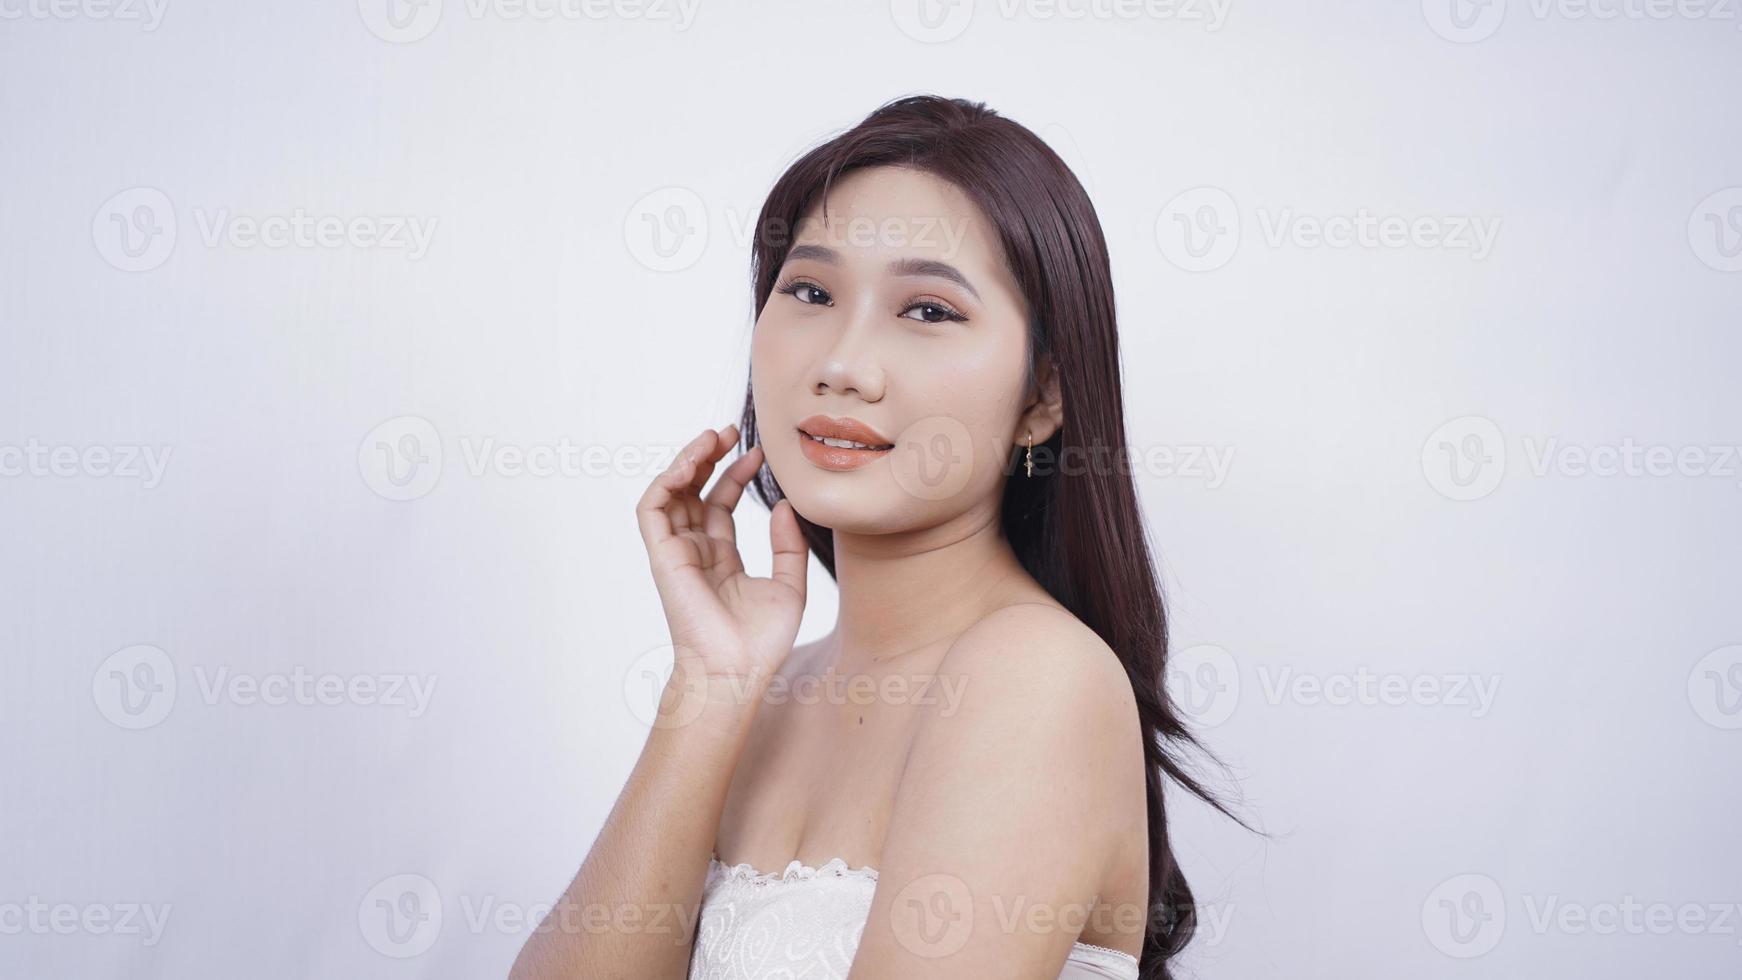 ragazza asiatica compongono sorriso carino mano all'orecchio isolato su sfondo bianco foto